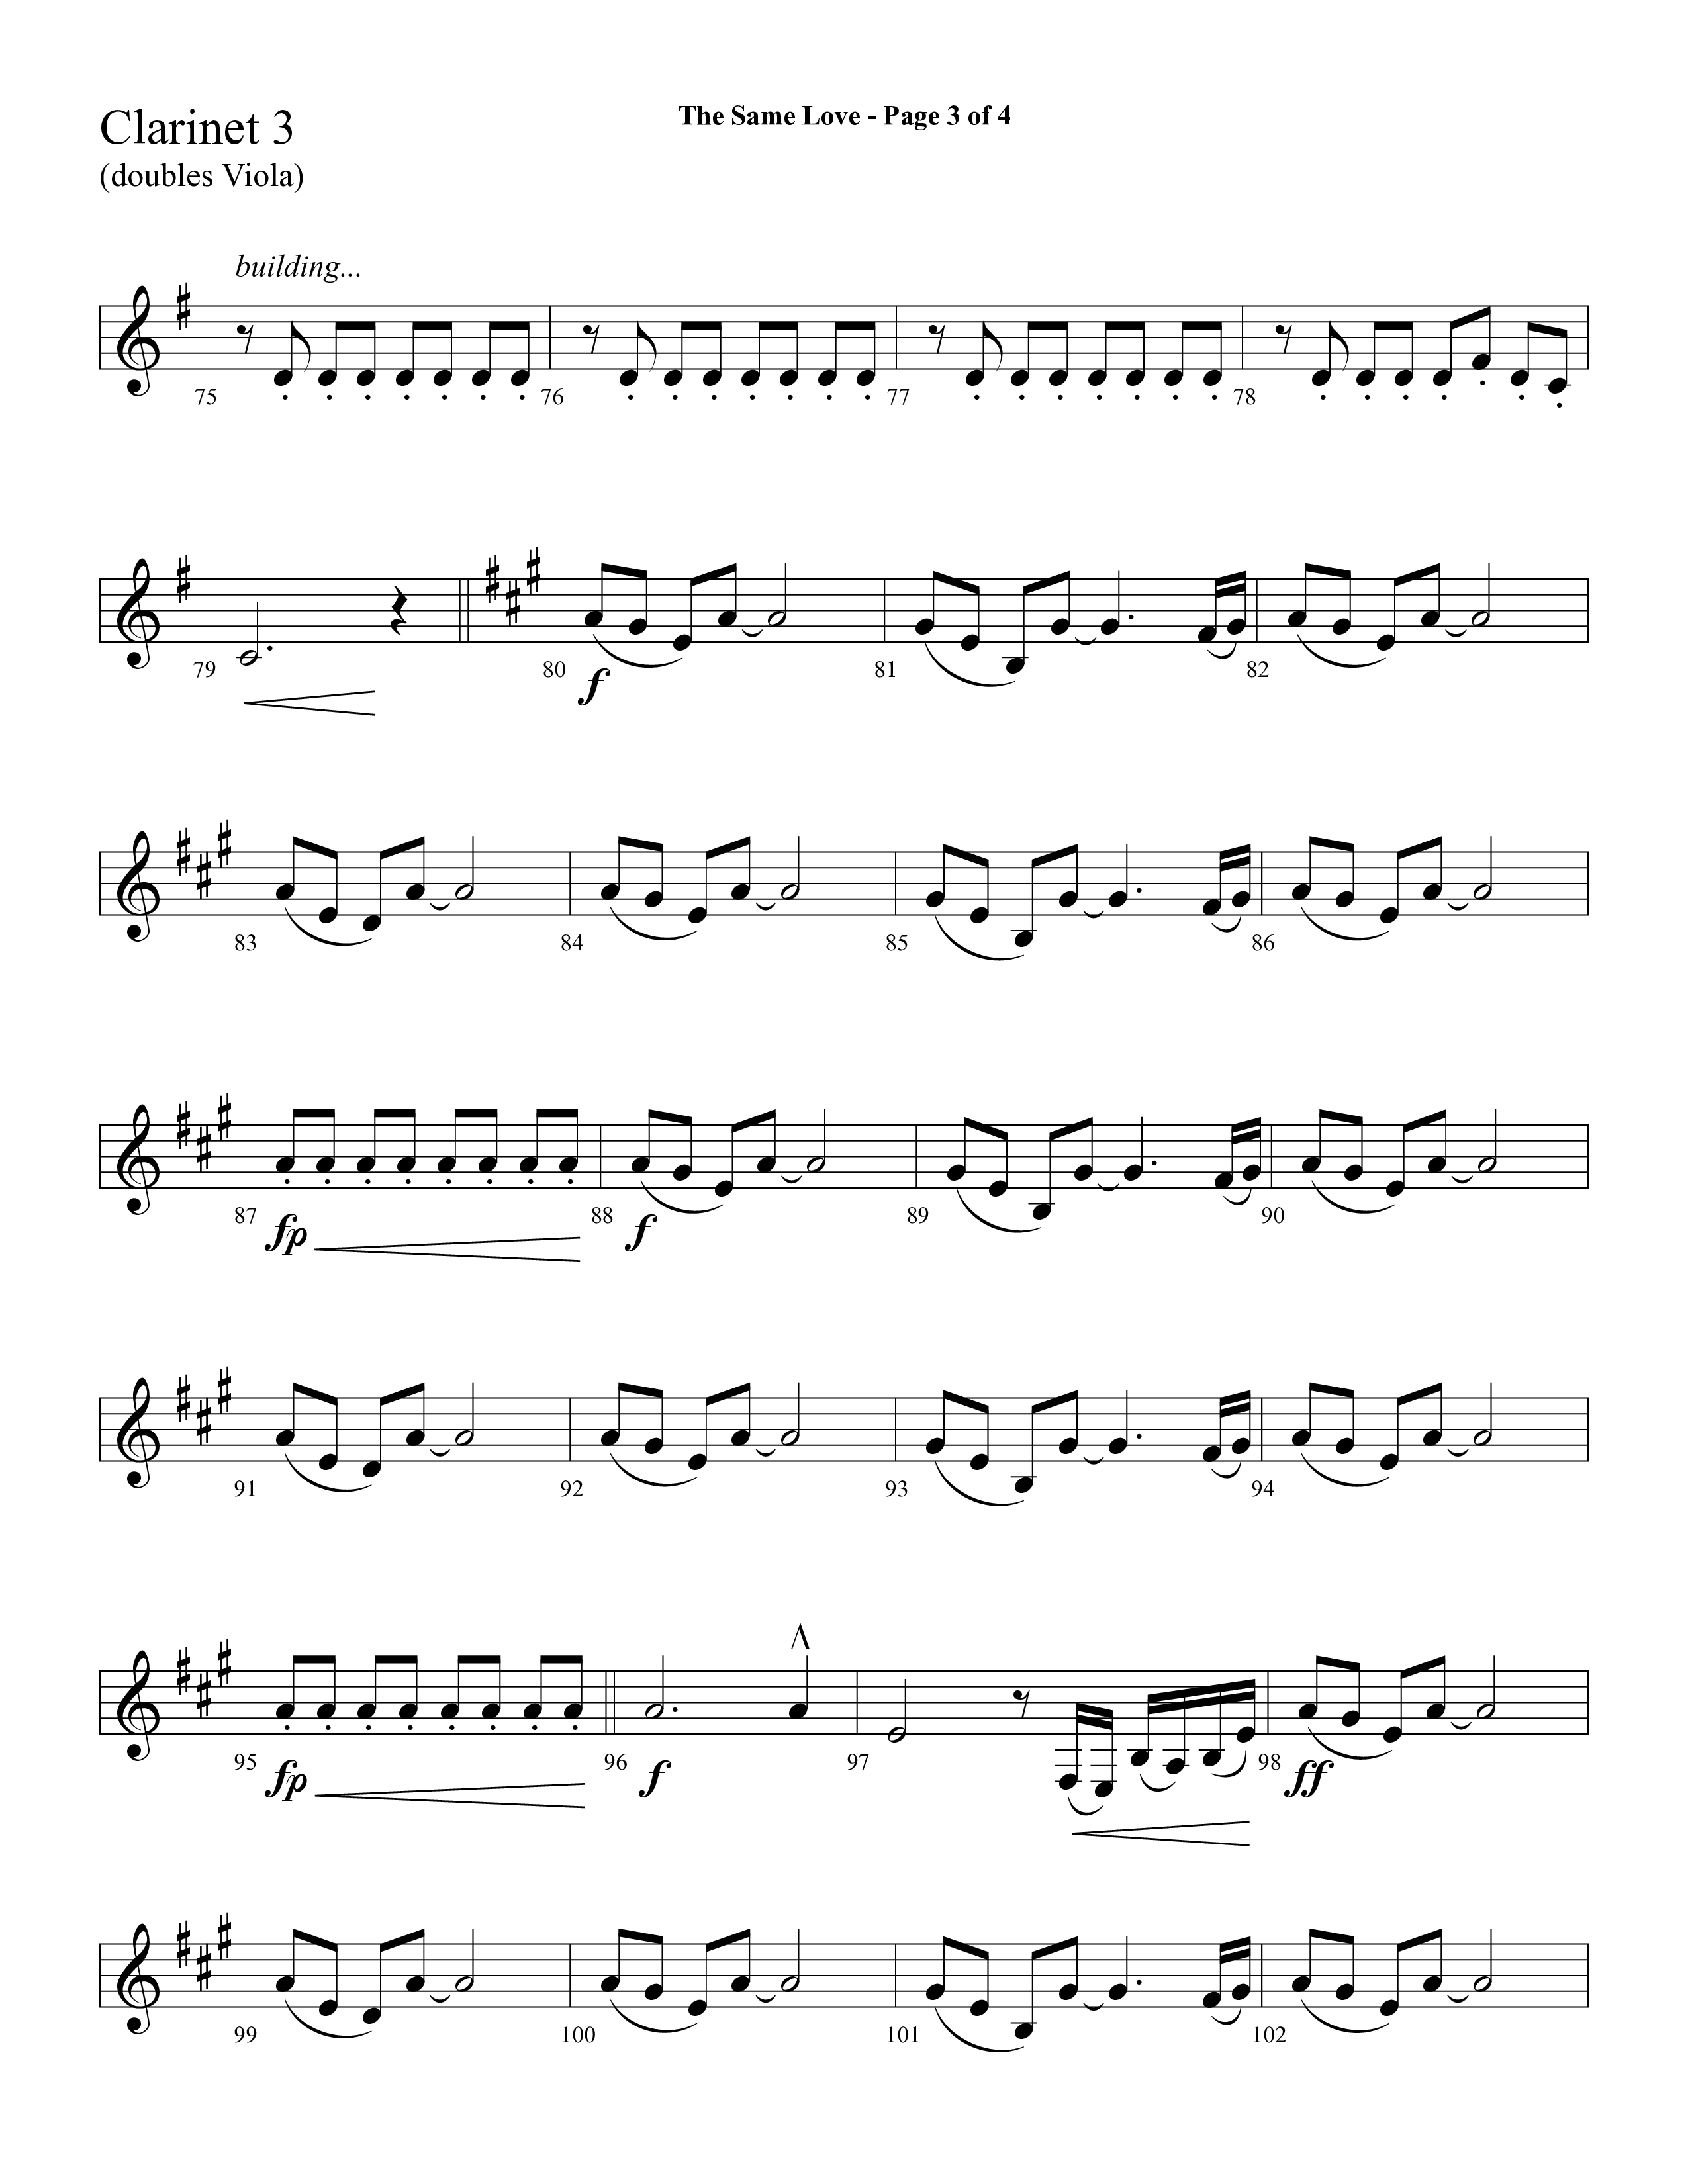 The Same Love (Choral Anthem SATB) Clarinet 3 (Lifeway Choral / Arr. Cliff Duren)